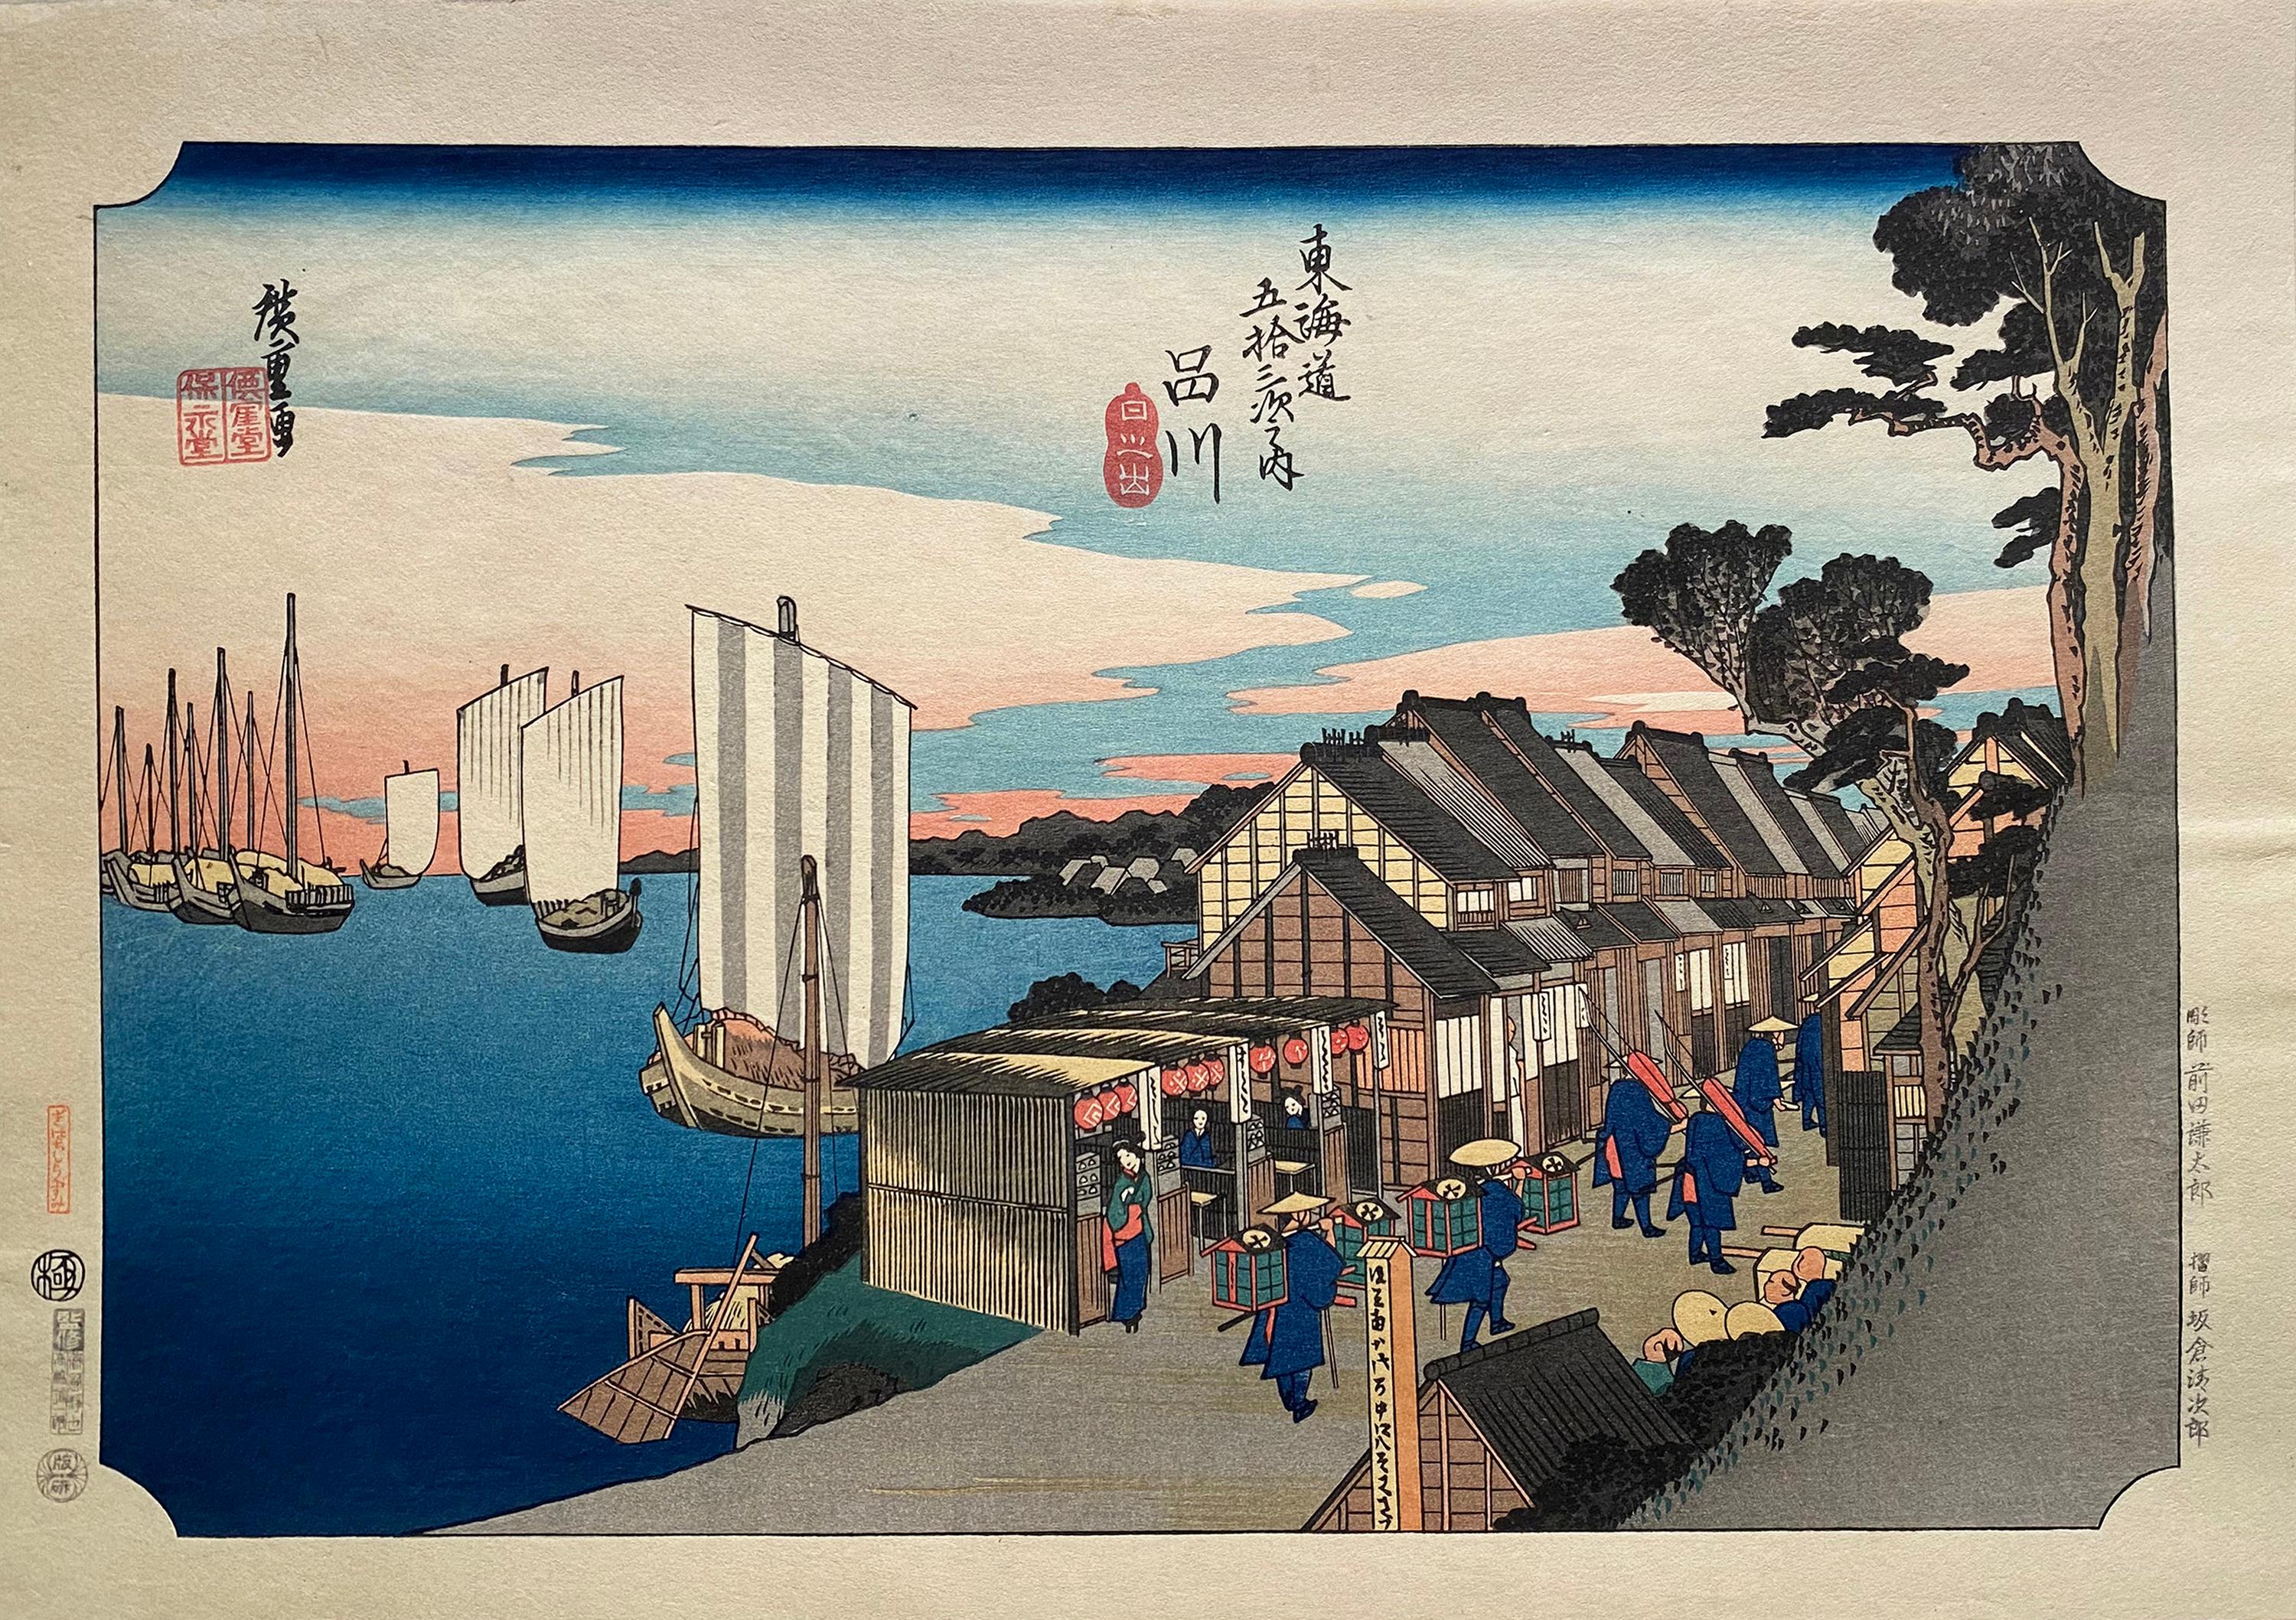 Utagawa Hiroshige (Ando Hiroshige) Landscape Print - 'Shinagawa Sunrise', After Utagawa Hiroshige 歌川廣重, Ukiyo-e Woodblock, Tokaido